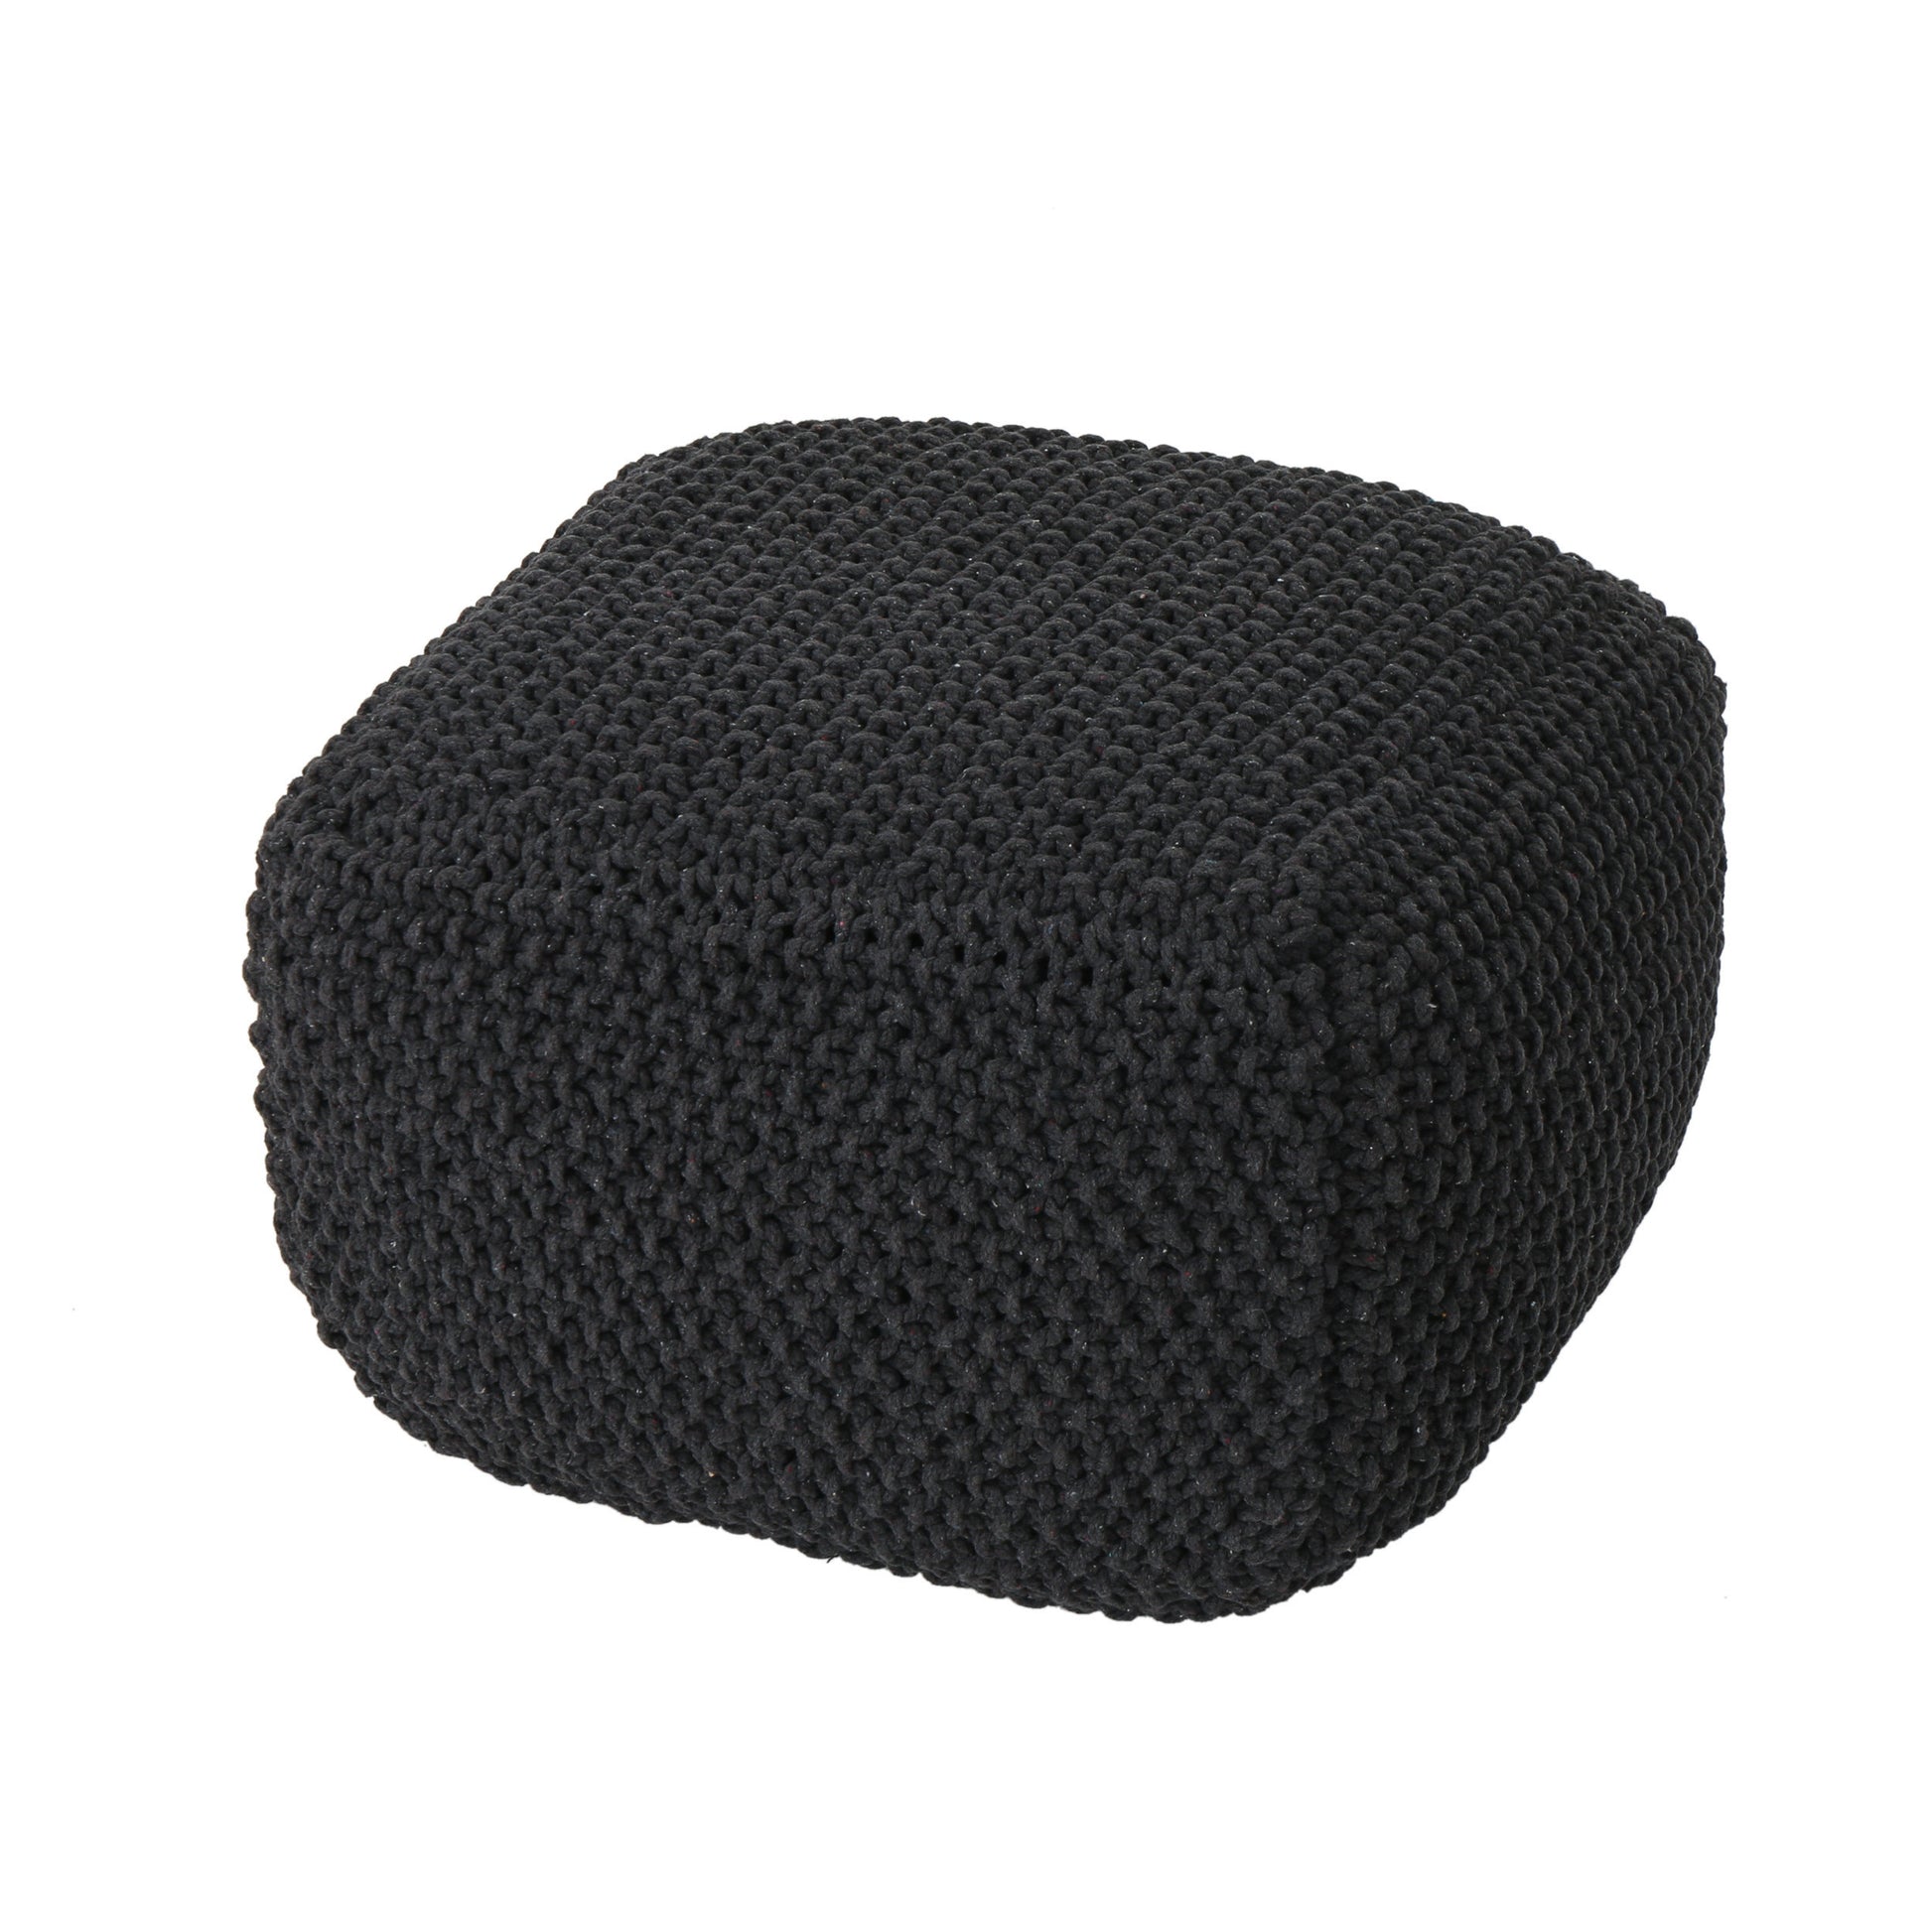 Hollis Knitted Cotton Pouf Cube 20 X 20 X 16 Pouf